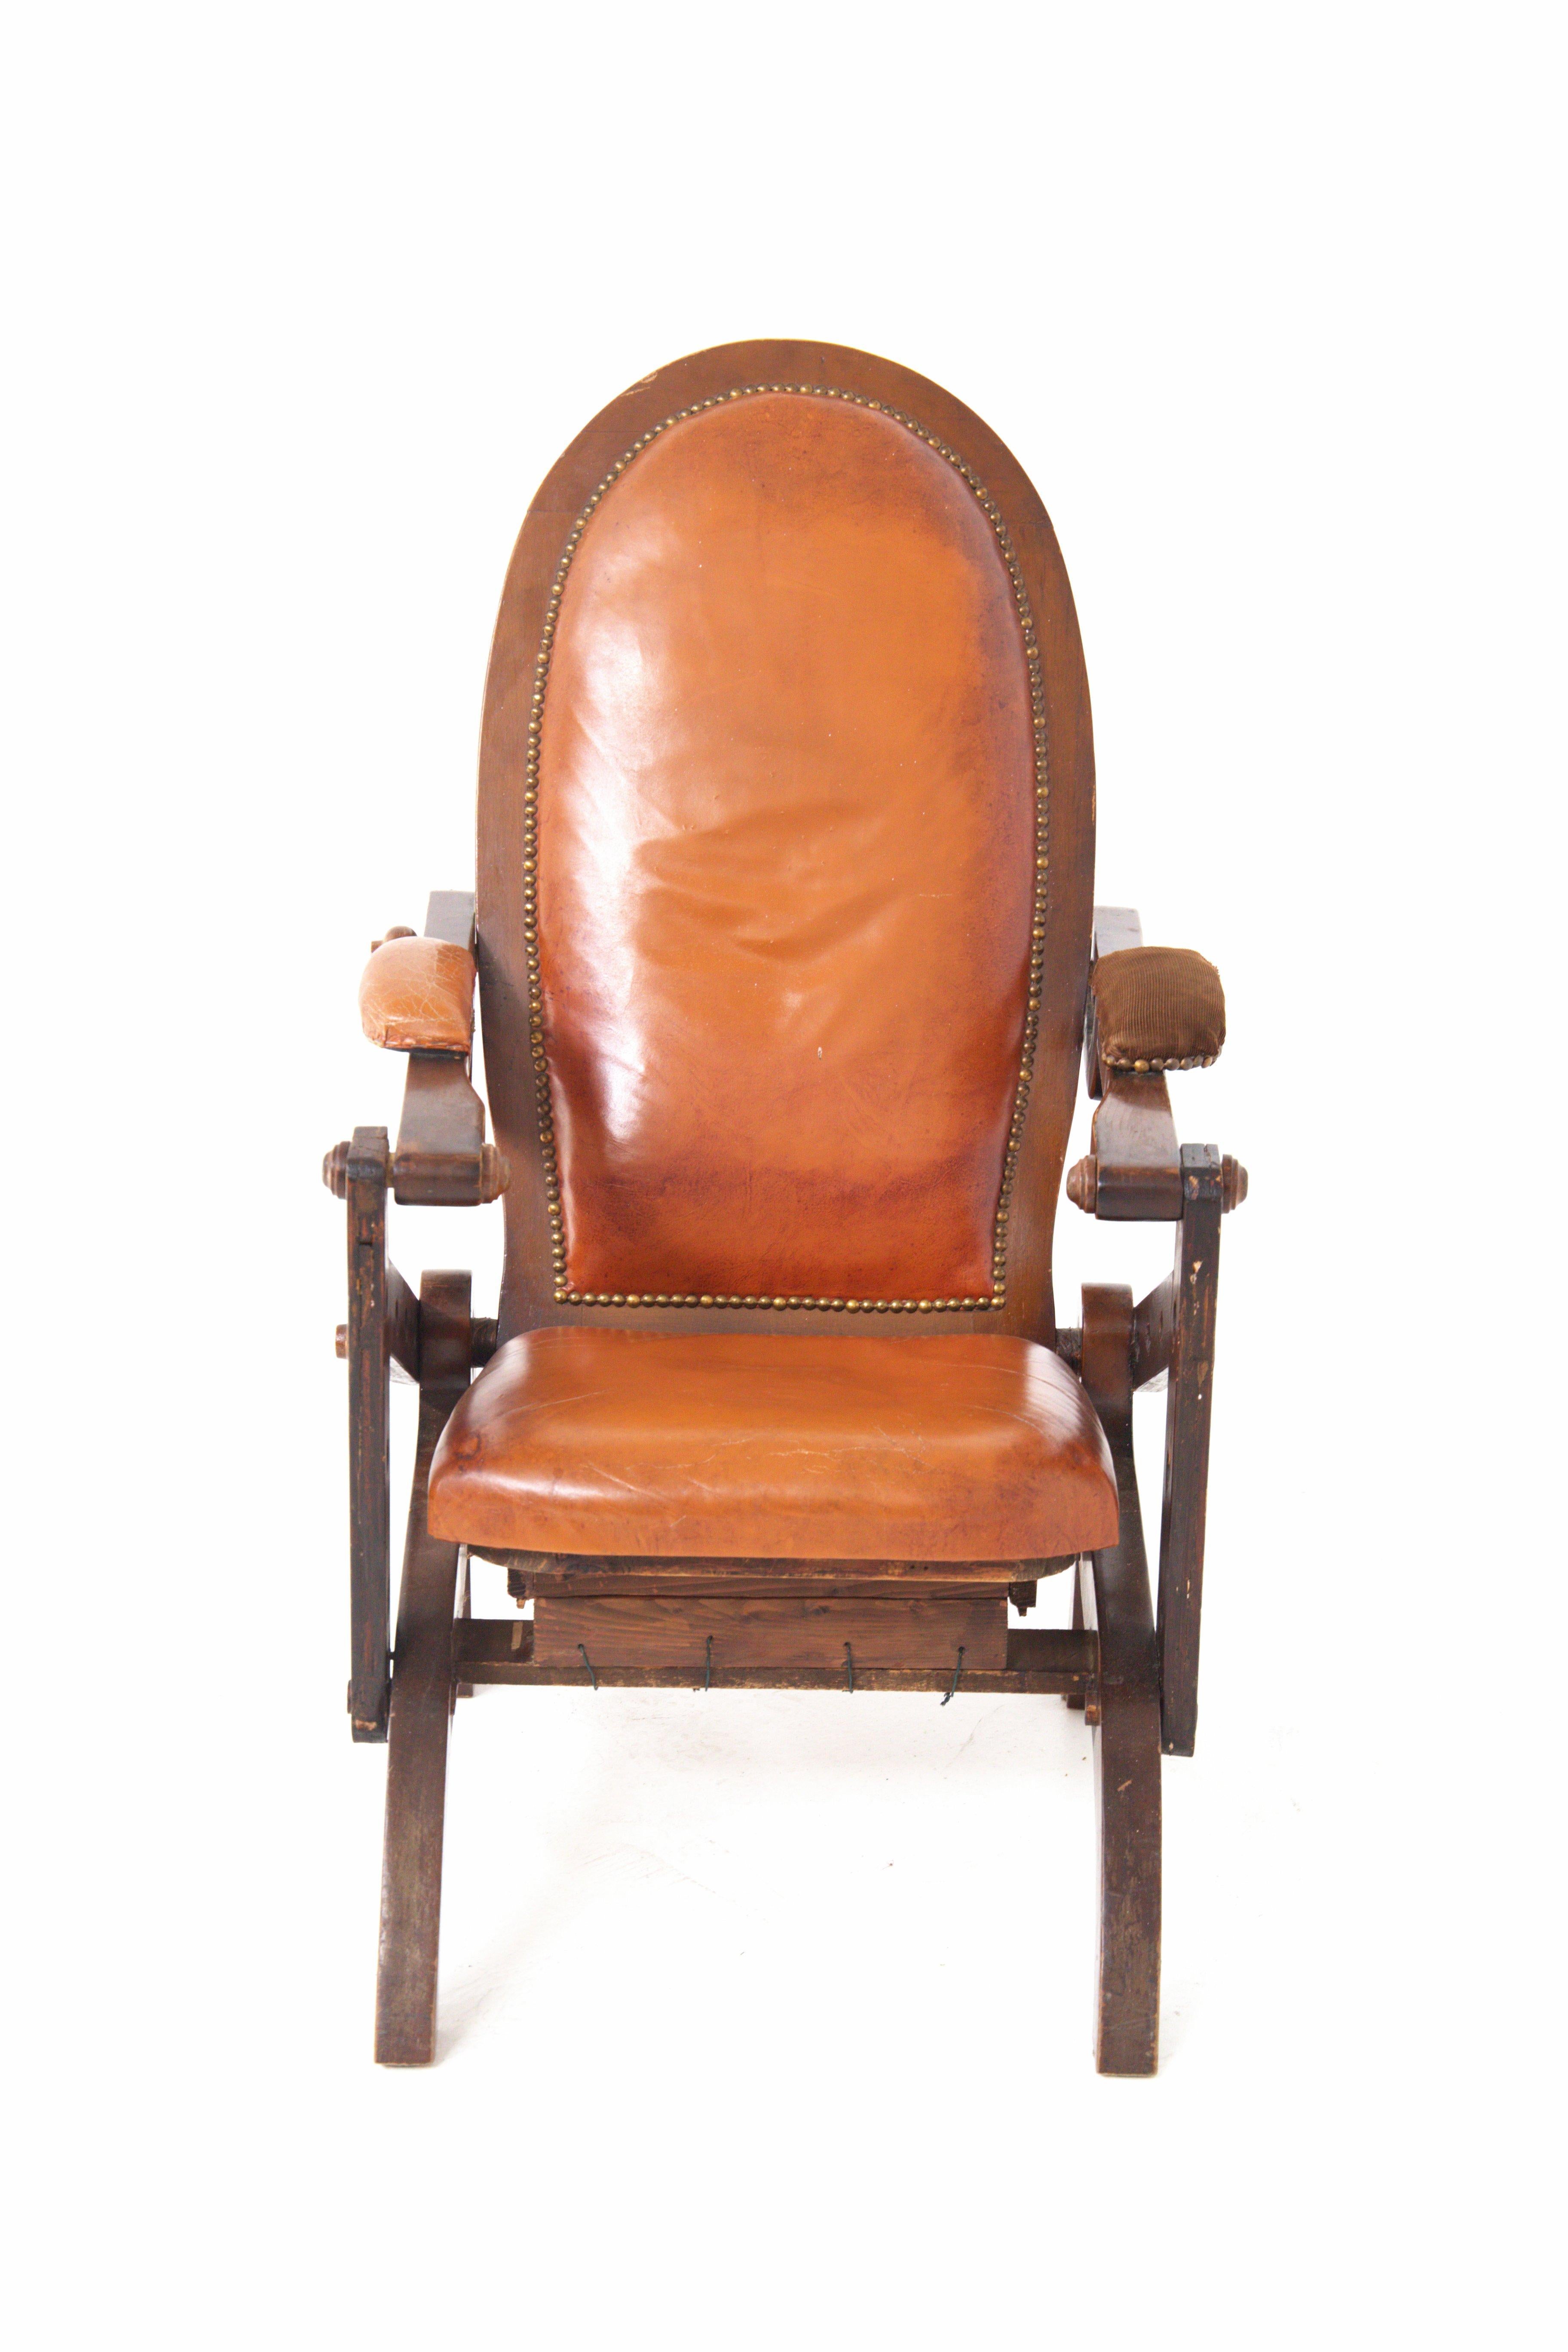 Ein prächtiger antiker italienischer Sessel aus rustikalem Holz und Leder aus dem 19.
Es gibt vier Holzbeine als Stütze, die beiden hinteren sind geschwungen, aber glatt, die vorderen sind leicht gebogen.
Die hinteren Beine heben sich an, um die